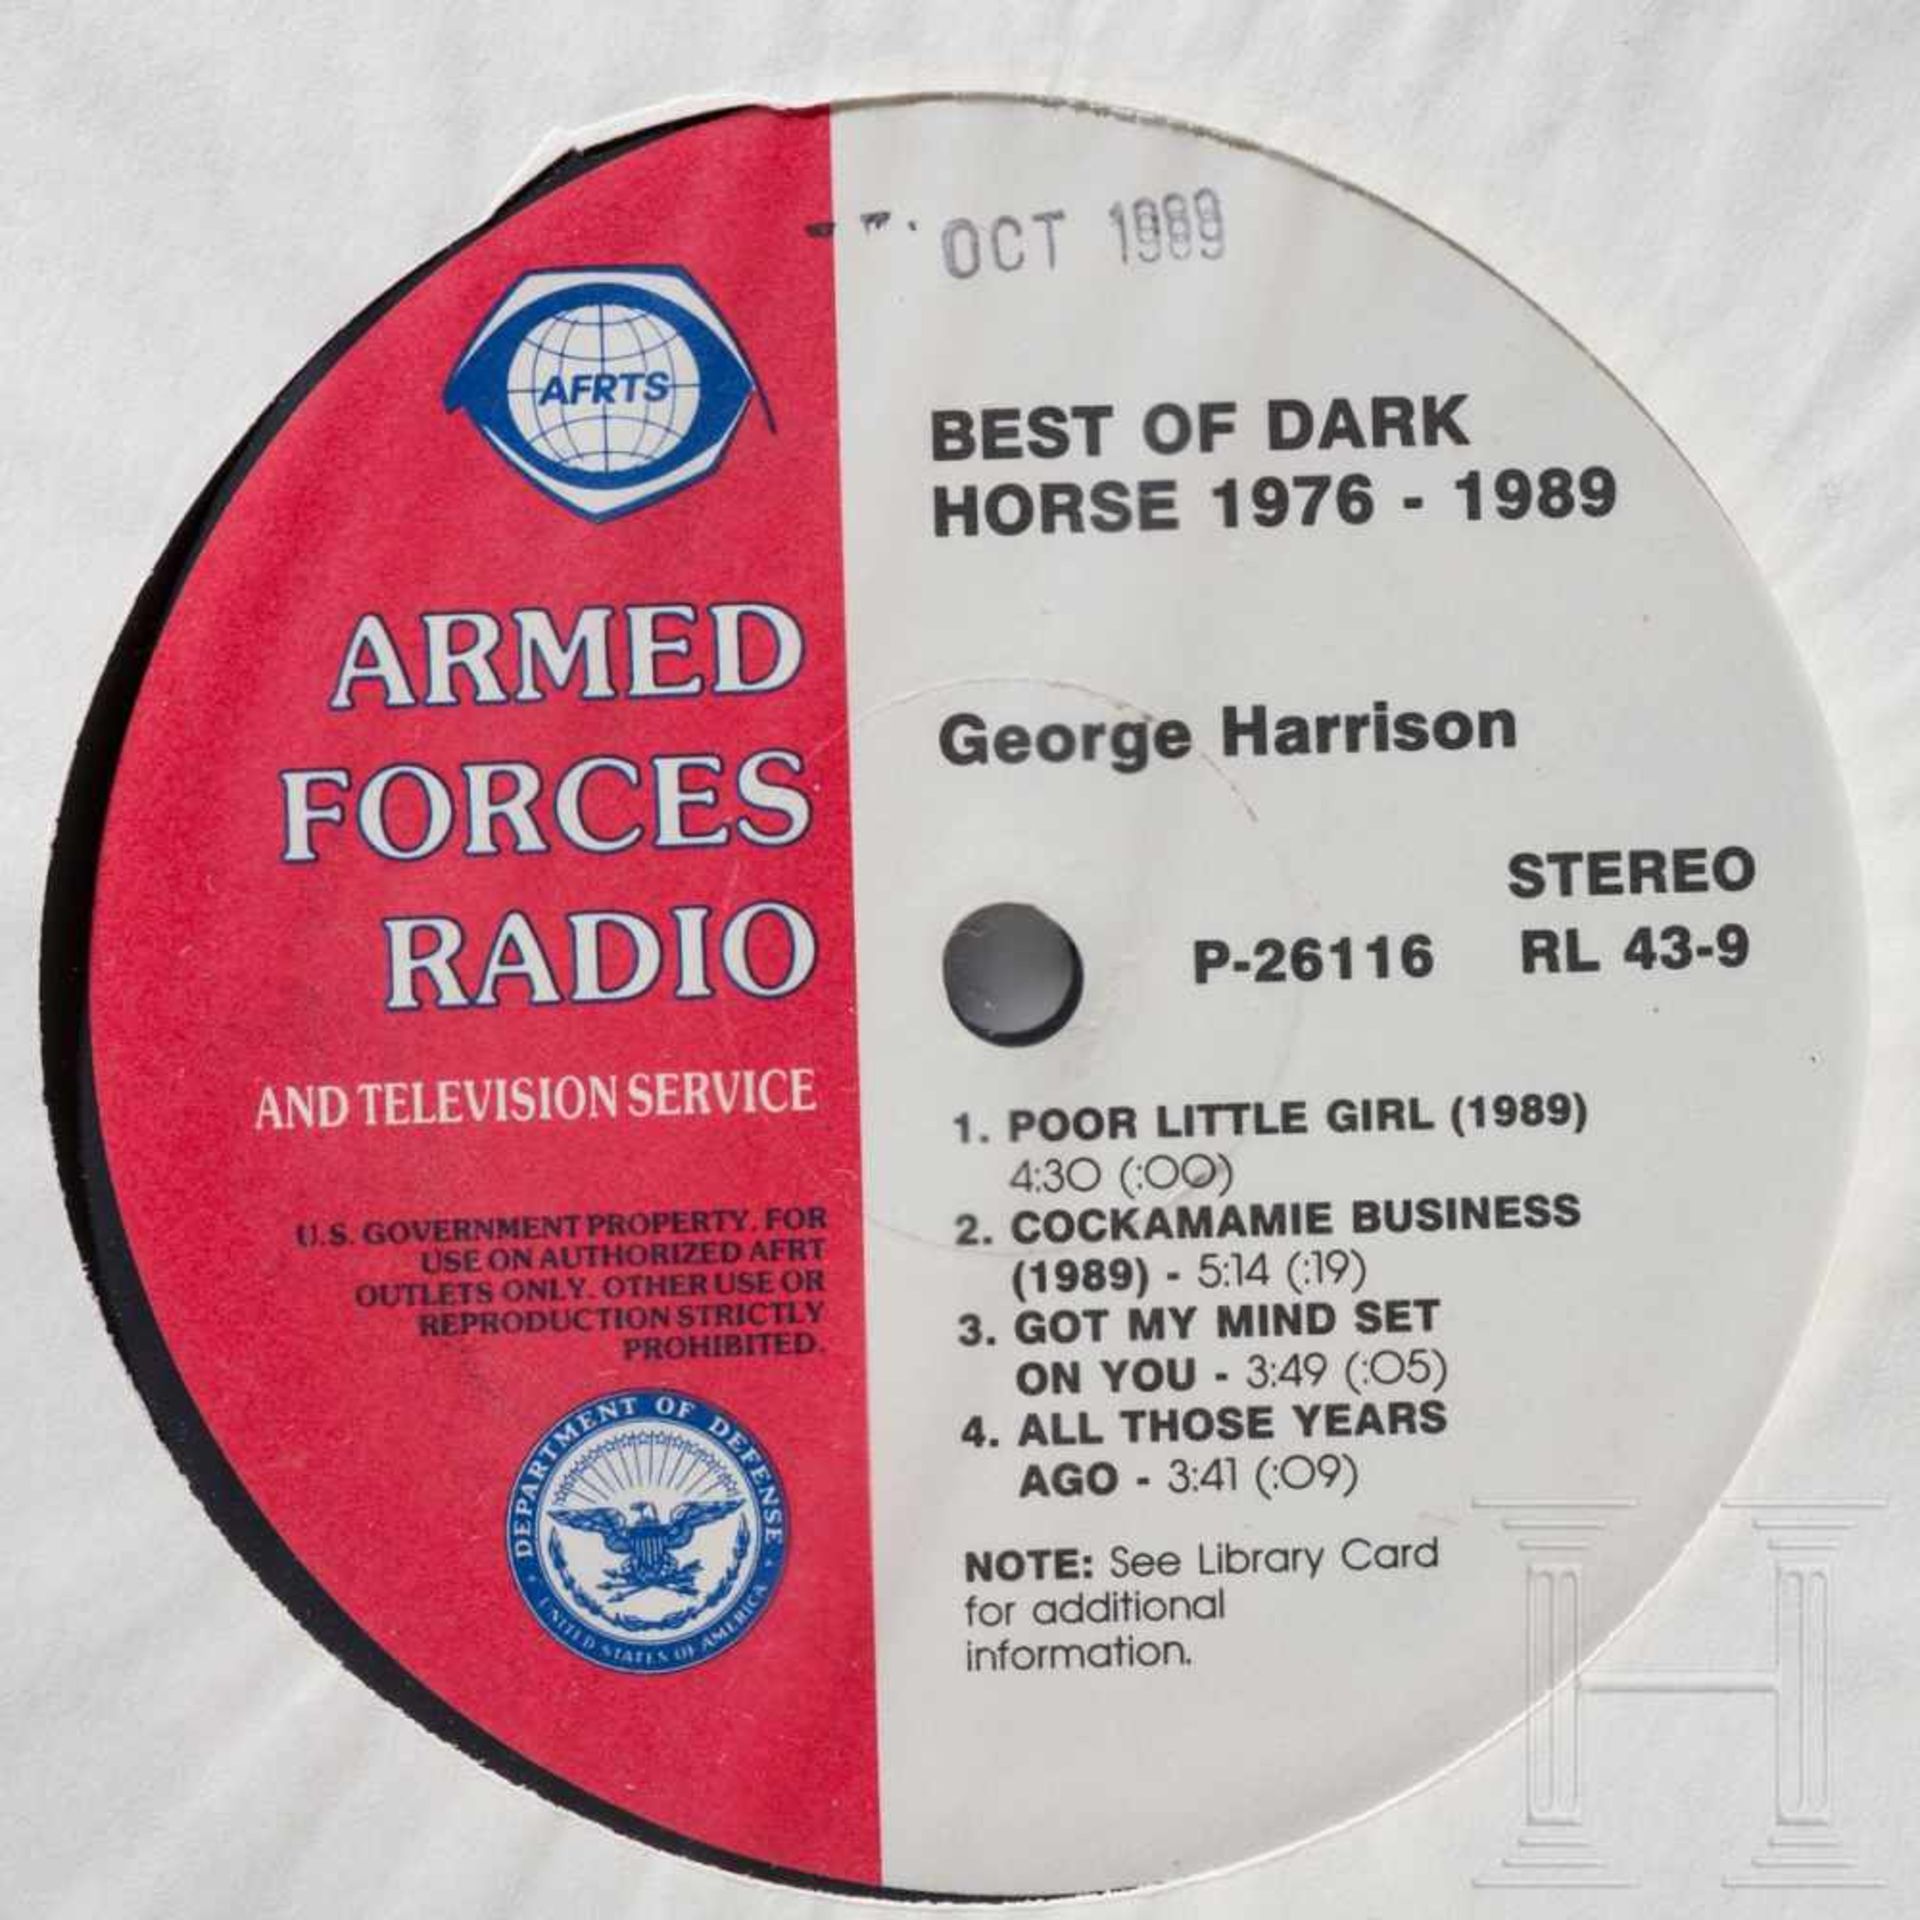 Neun Schallplatten der AFRTS (Armed Forces Radio & Television Service) - Beatles und weitere - Bild 6 aus 10